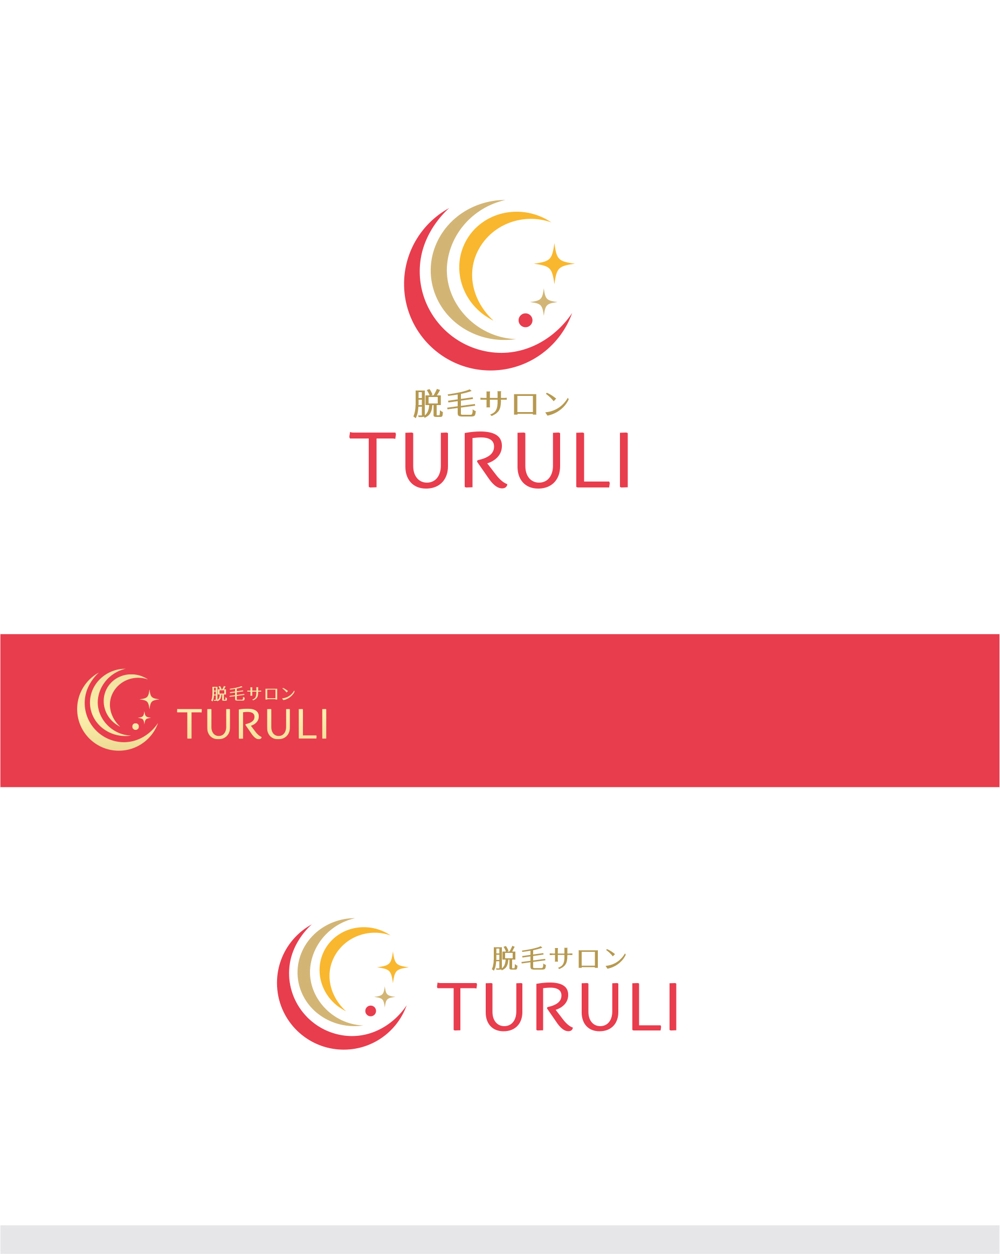 TURULI_1.jpg